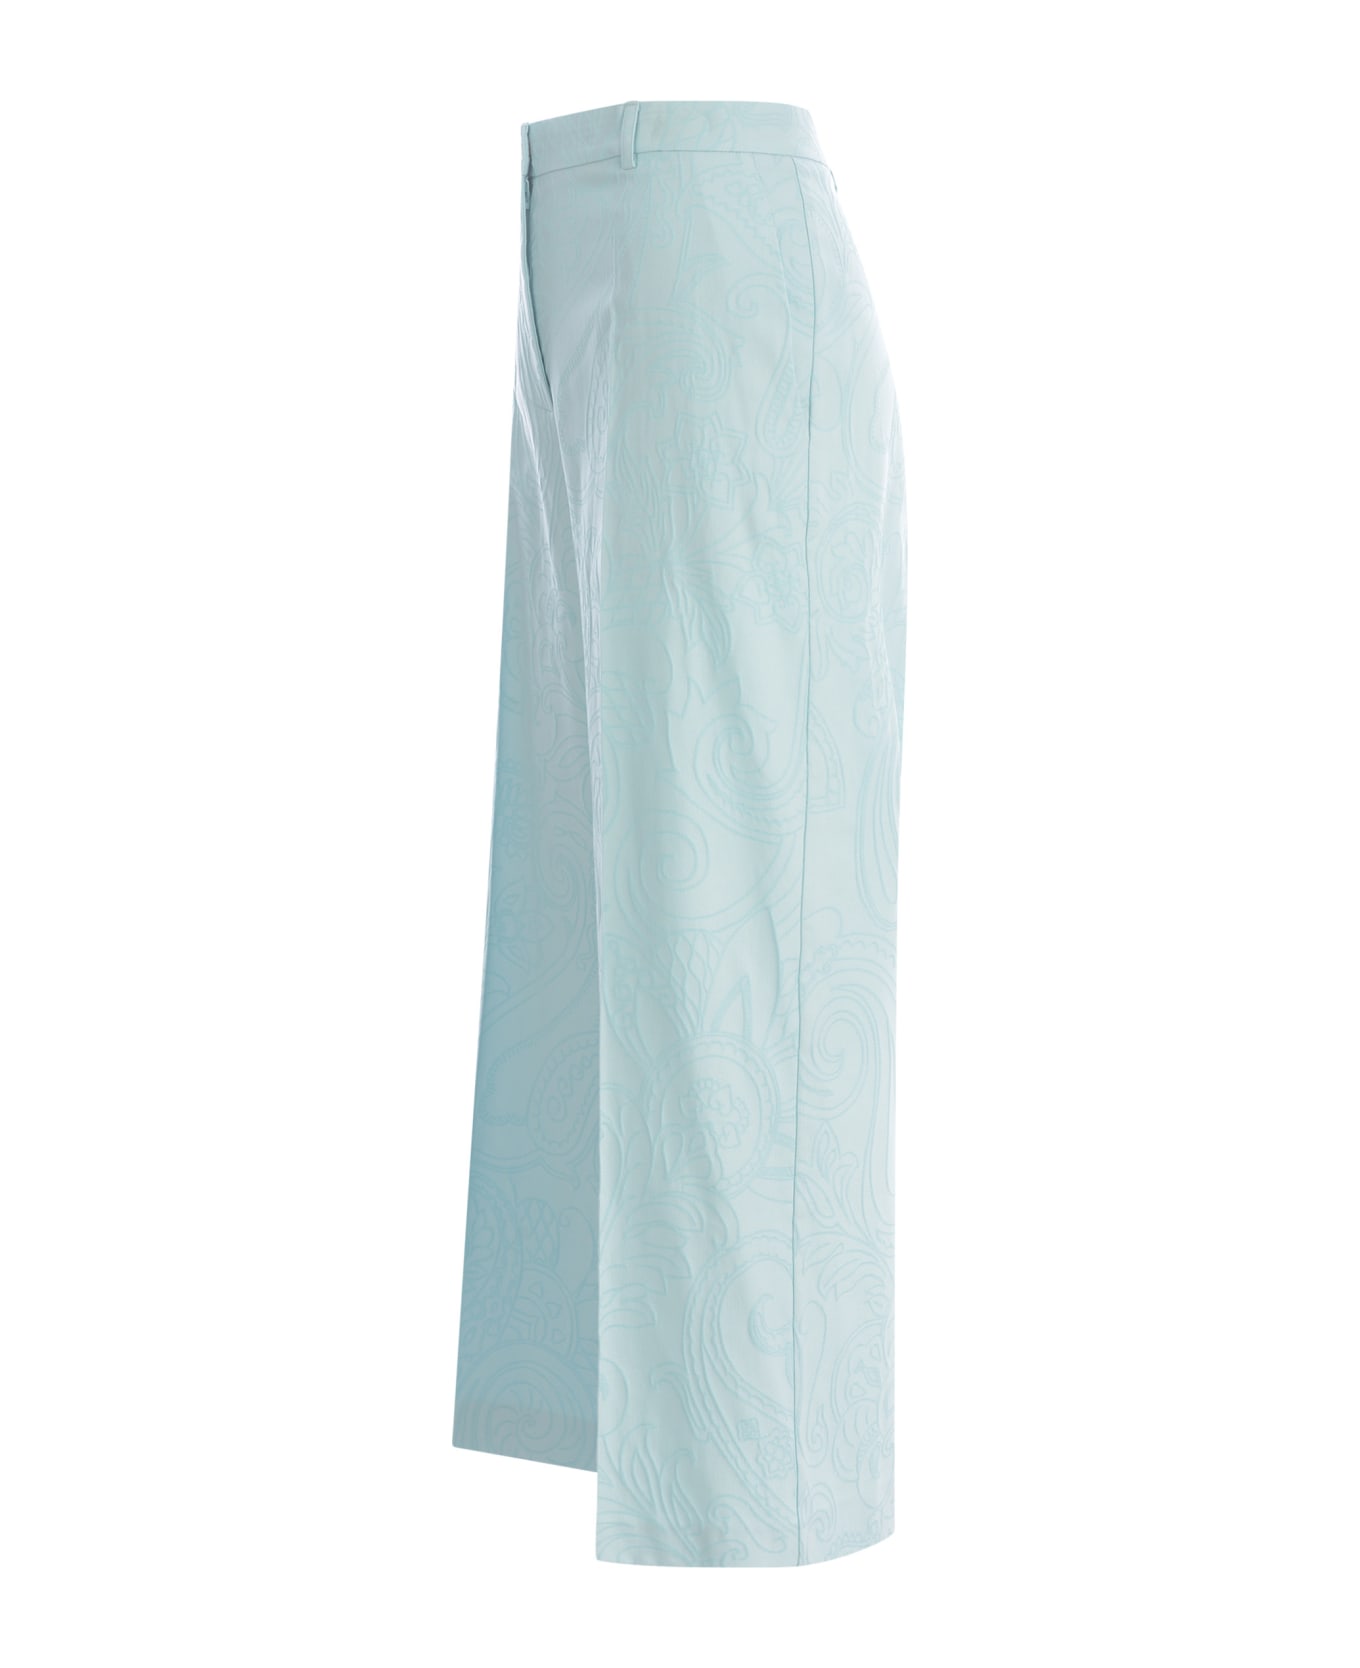 Etro Pastel Light-blue Stretch Cotton Blend Cropped-cut Pant - LIGHTBLUE